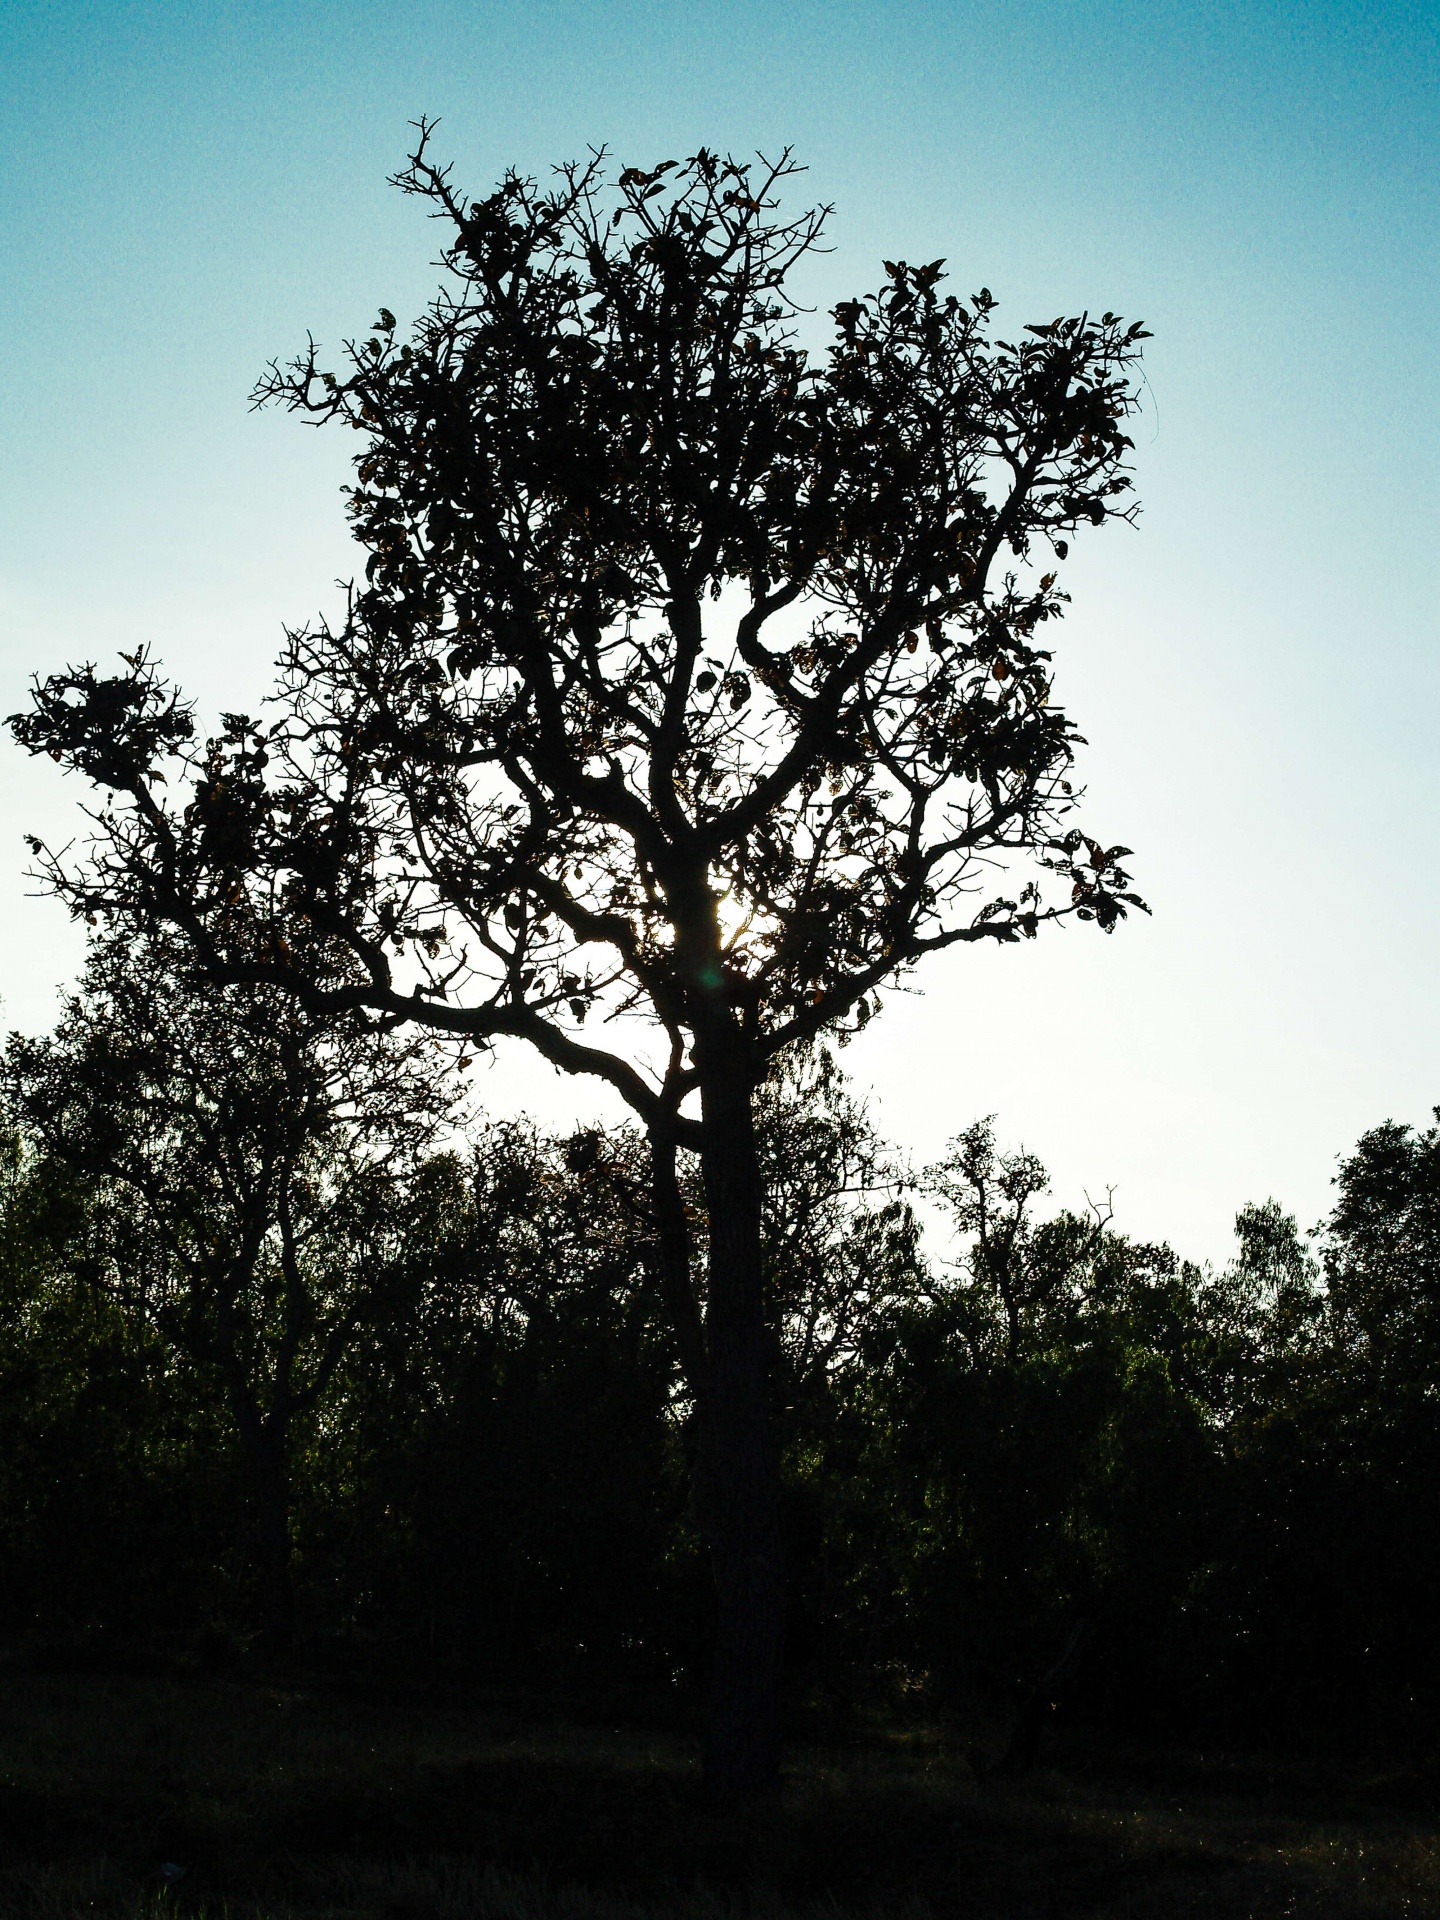 Dode boom, silhouet boom achtergrond